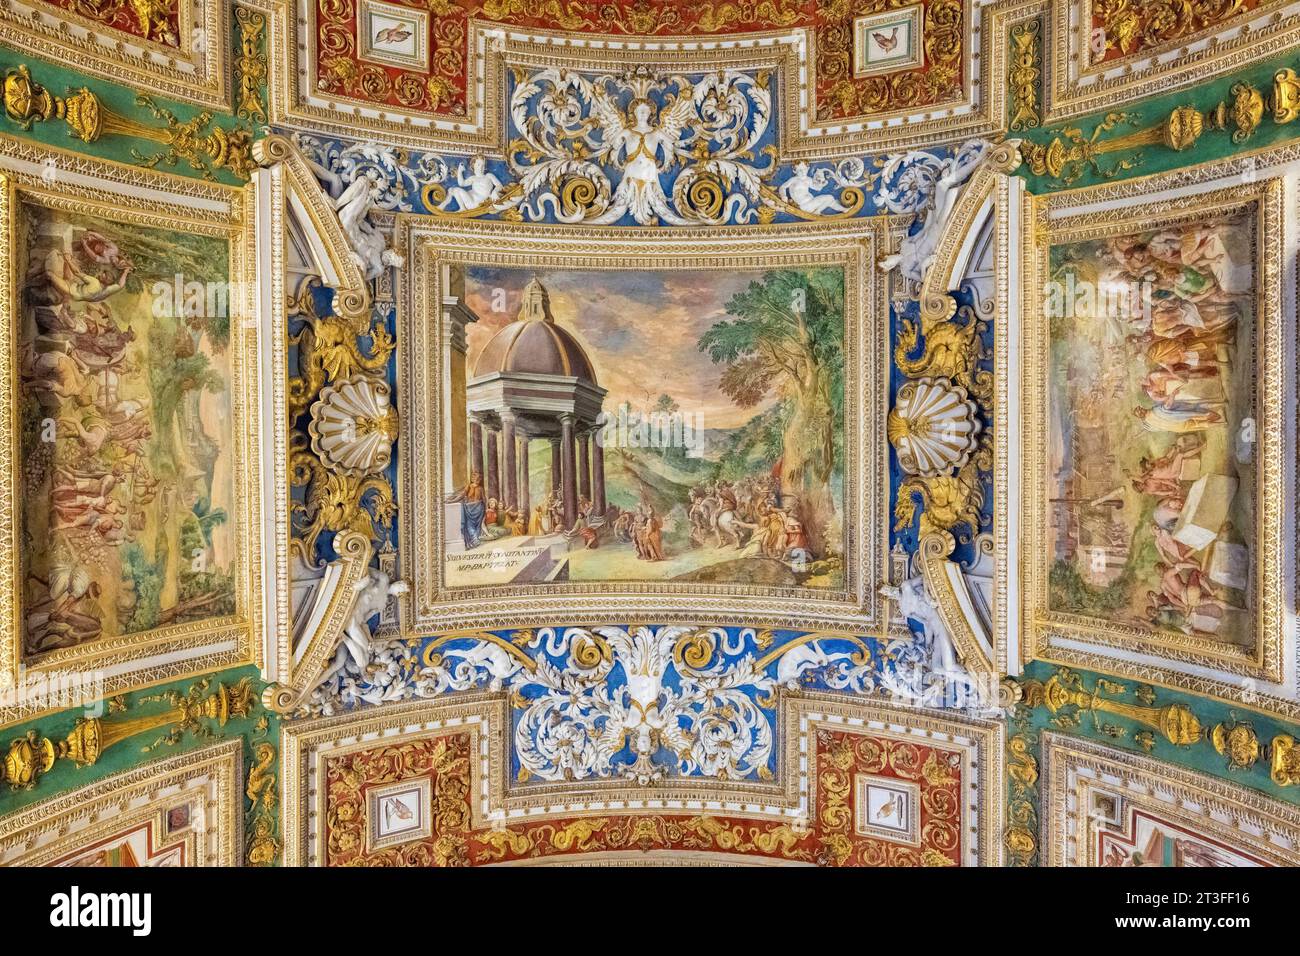 Italia, Lazio, Roma, città del Vaticano dichiarata Patrimonio dell'Umanità dall'UNESCO, Musei Vaticani, galleria di mappe geografiche Foto Stock